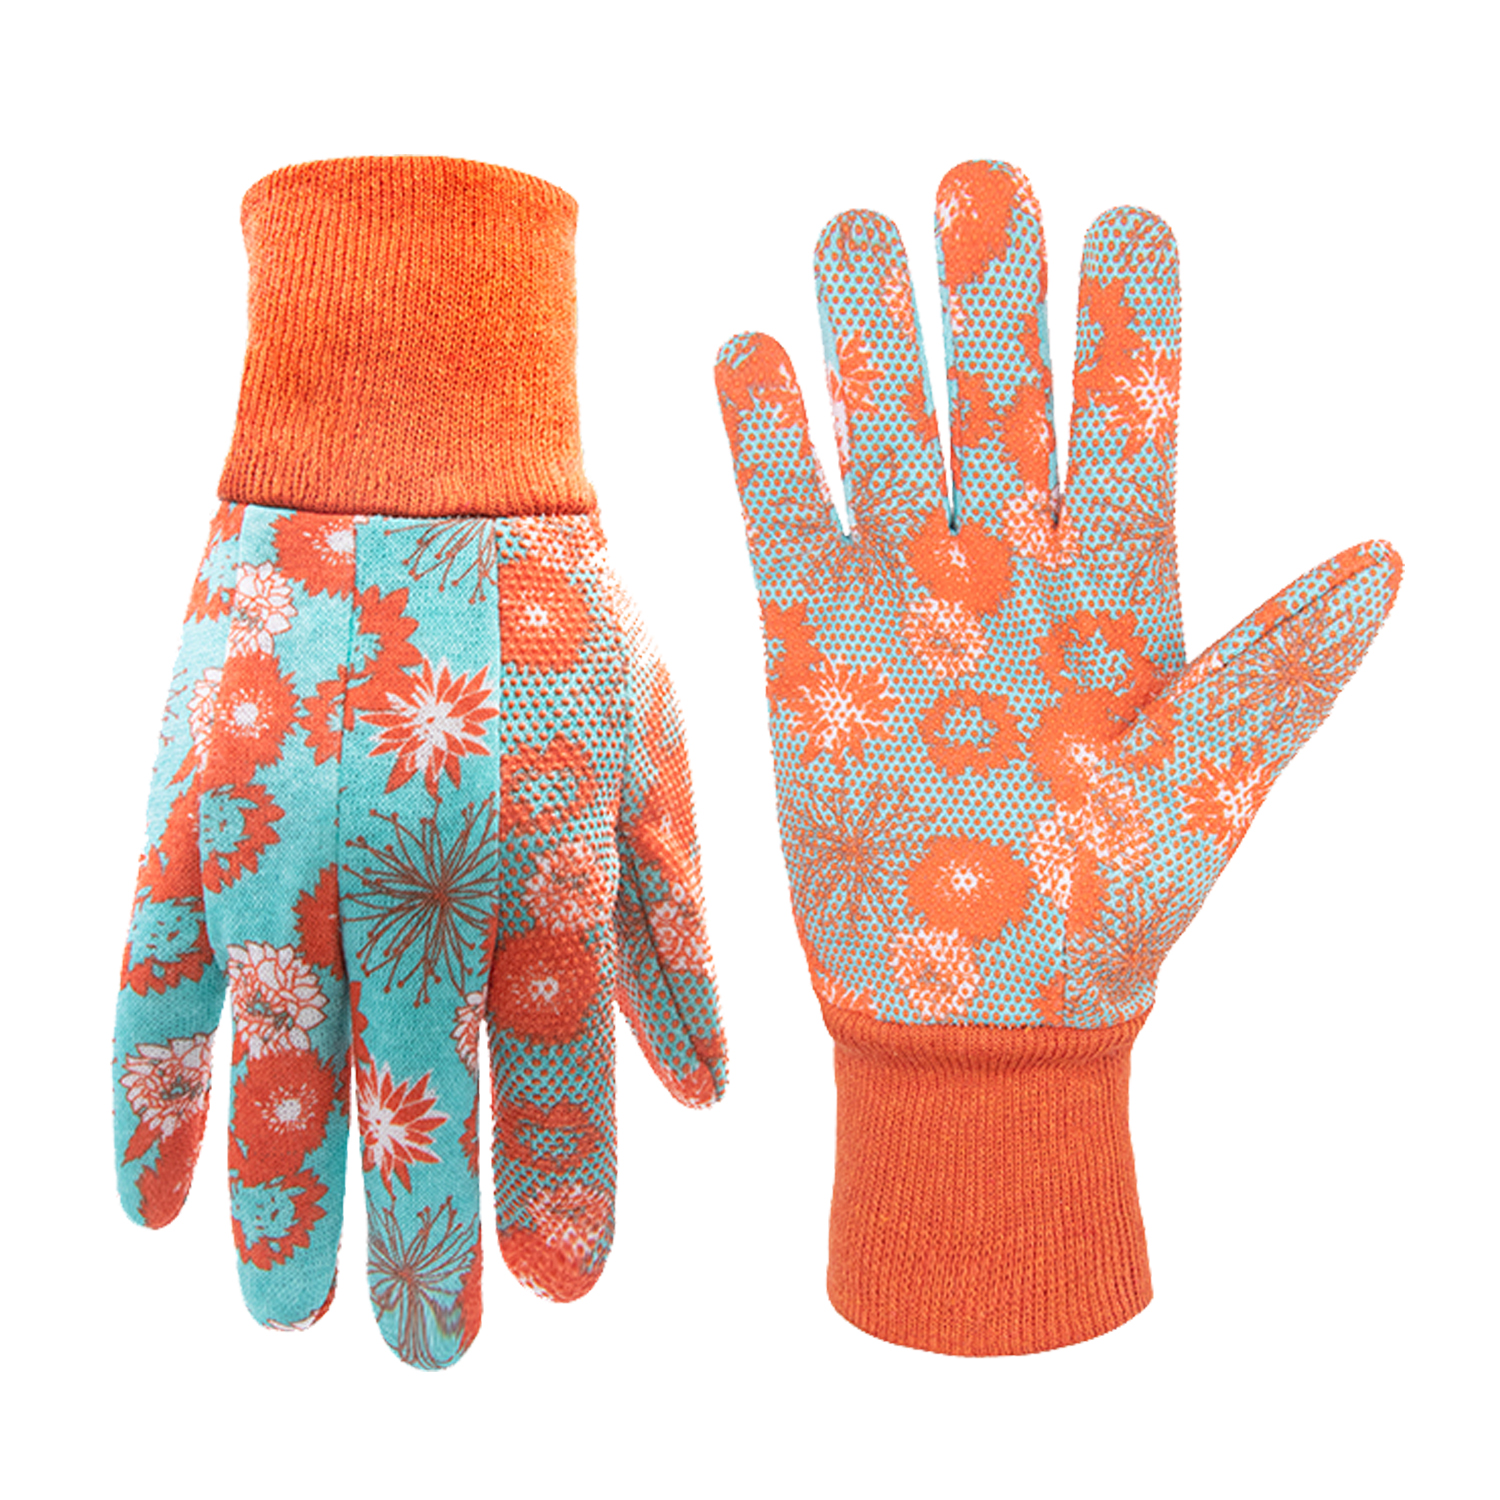 Sweat 1 Pair Practical Outdoor Unisex Yard Garden Work Gloves with